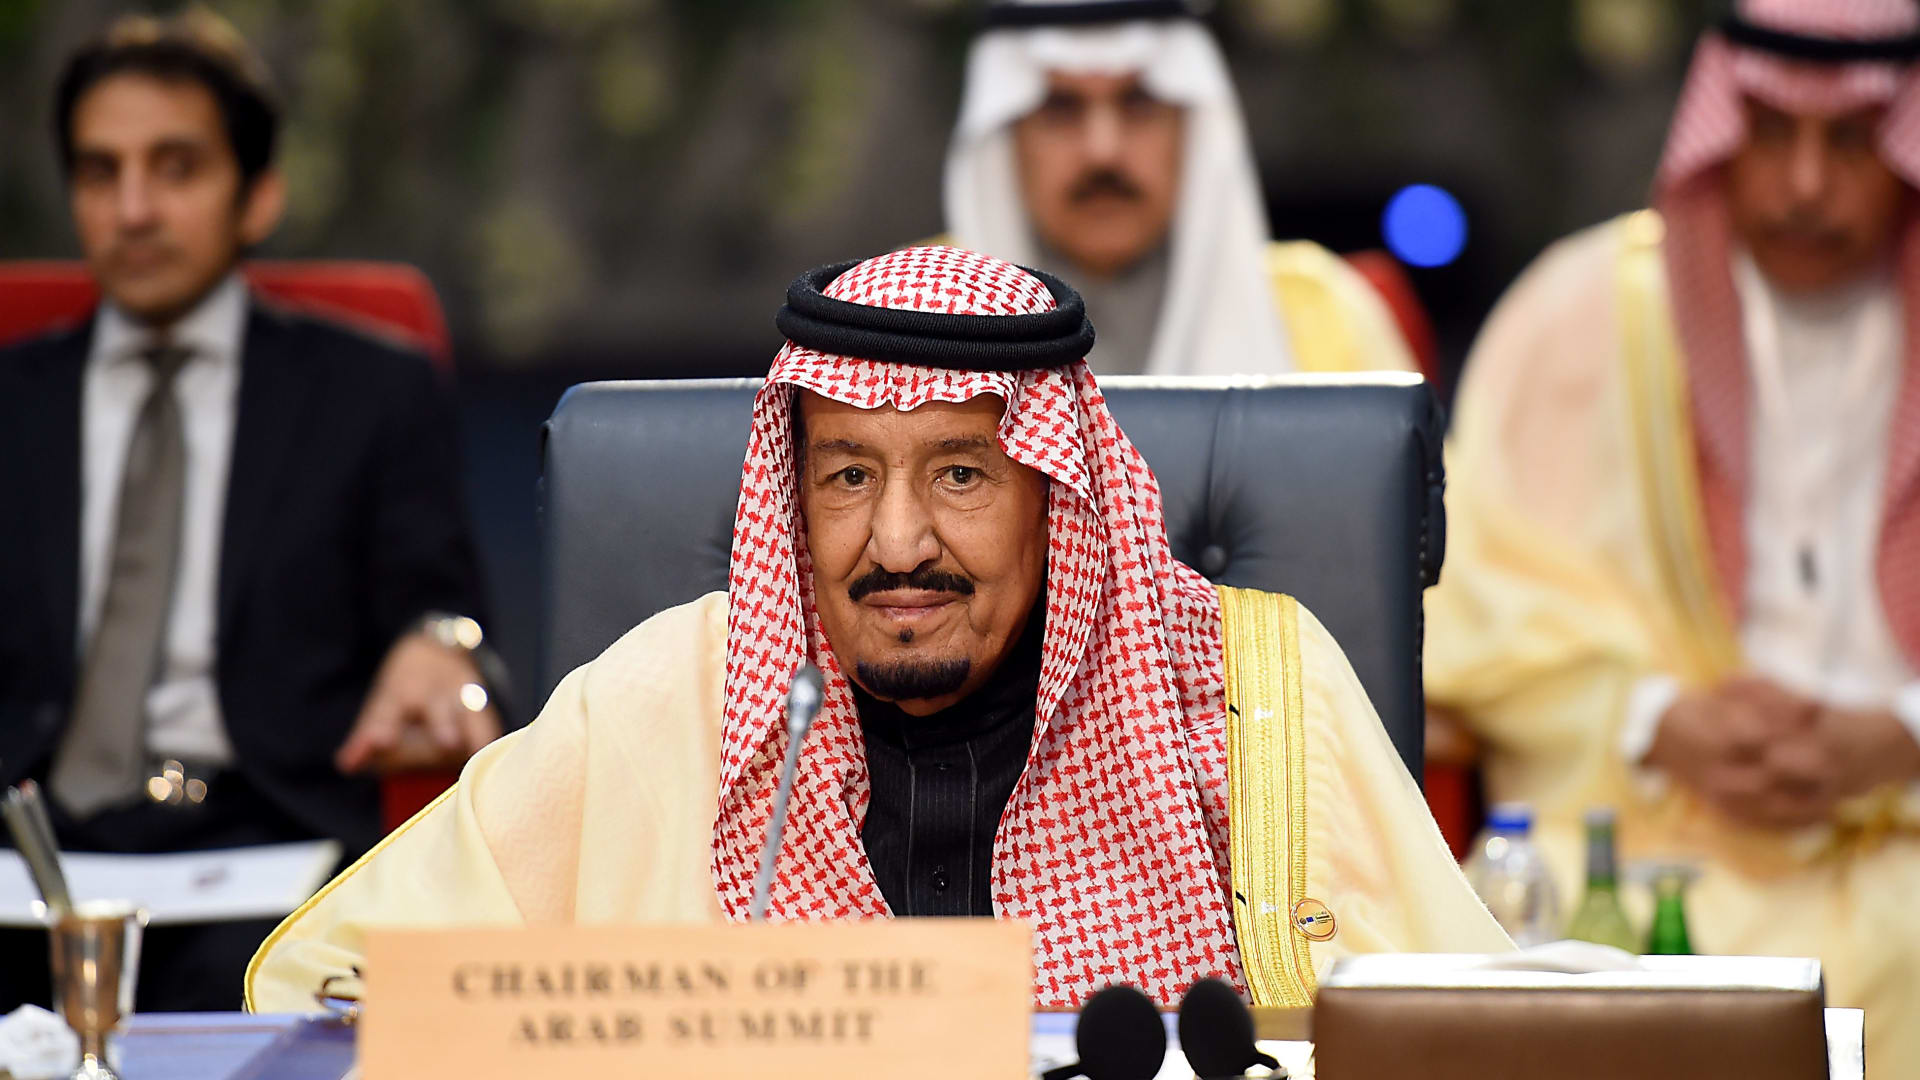 العاهل السعودي يكلَف أمين مجلس التعاون بنقل الدعوات لقادة الخليج لحضور قمة الرياض